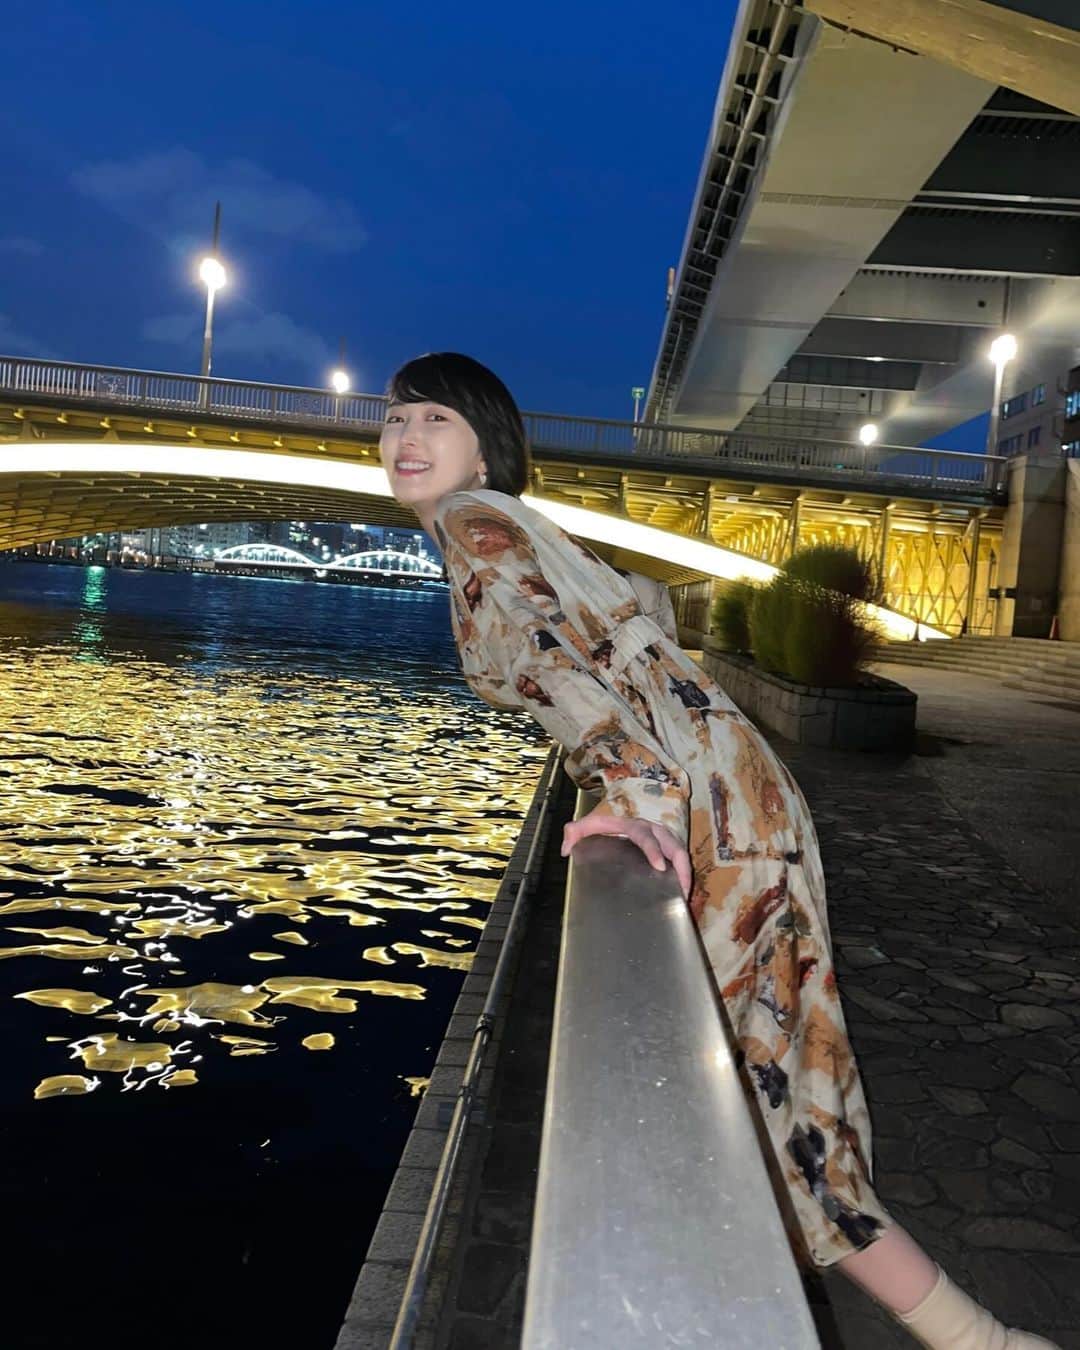 忍野さらのインスタグラム：「隅田川は、東京の中心を大きくゆっくり流れていて、都会の忙しない空気を調和してるみたい。 眺めていると心が安らぎます。  隅田川をかける橋はどれも素敵だけど 夜の蔵前橋は暖色のライトがムーディーで好きです  隅田川での記憶をふり返ると なぜかその時の自分の情緒まで思い出す🌉  そんな懐の大きい ロマンチックな隅田川さま なんだか飛び込みたくなります  #隅田川 #バタフライで横断したい #サップもいいな　 #蔵前橋」